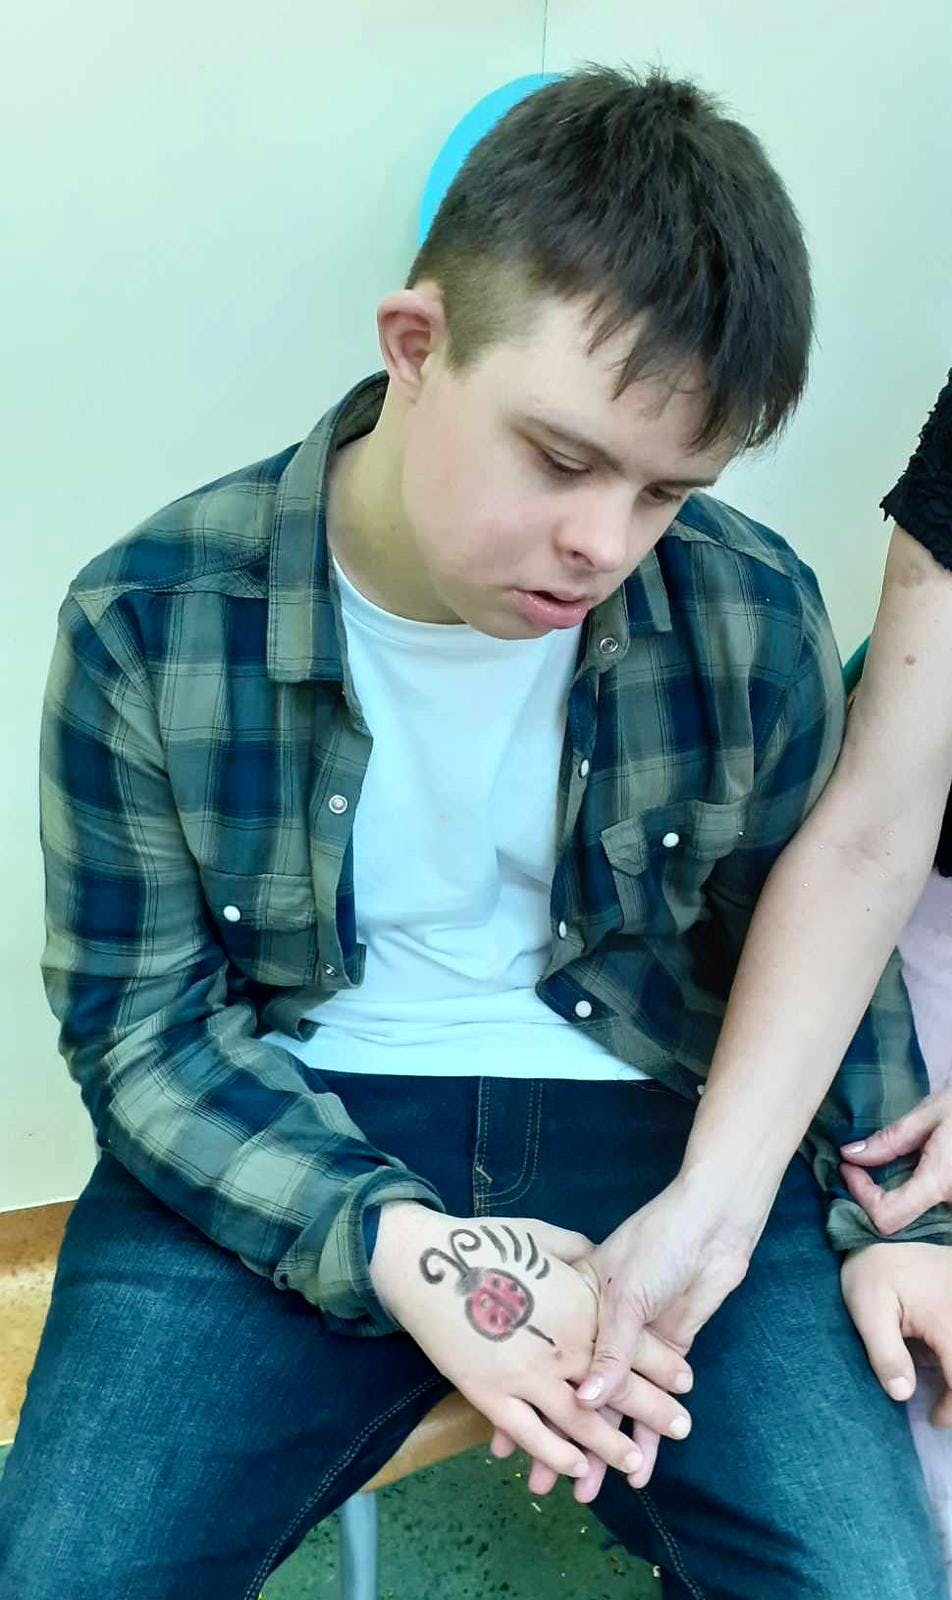 Karnawałowe spotkania | Chłopiec pokazuje tatuaż.jpg